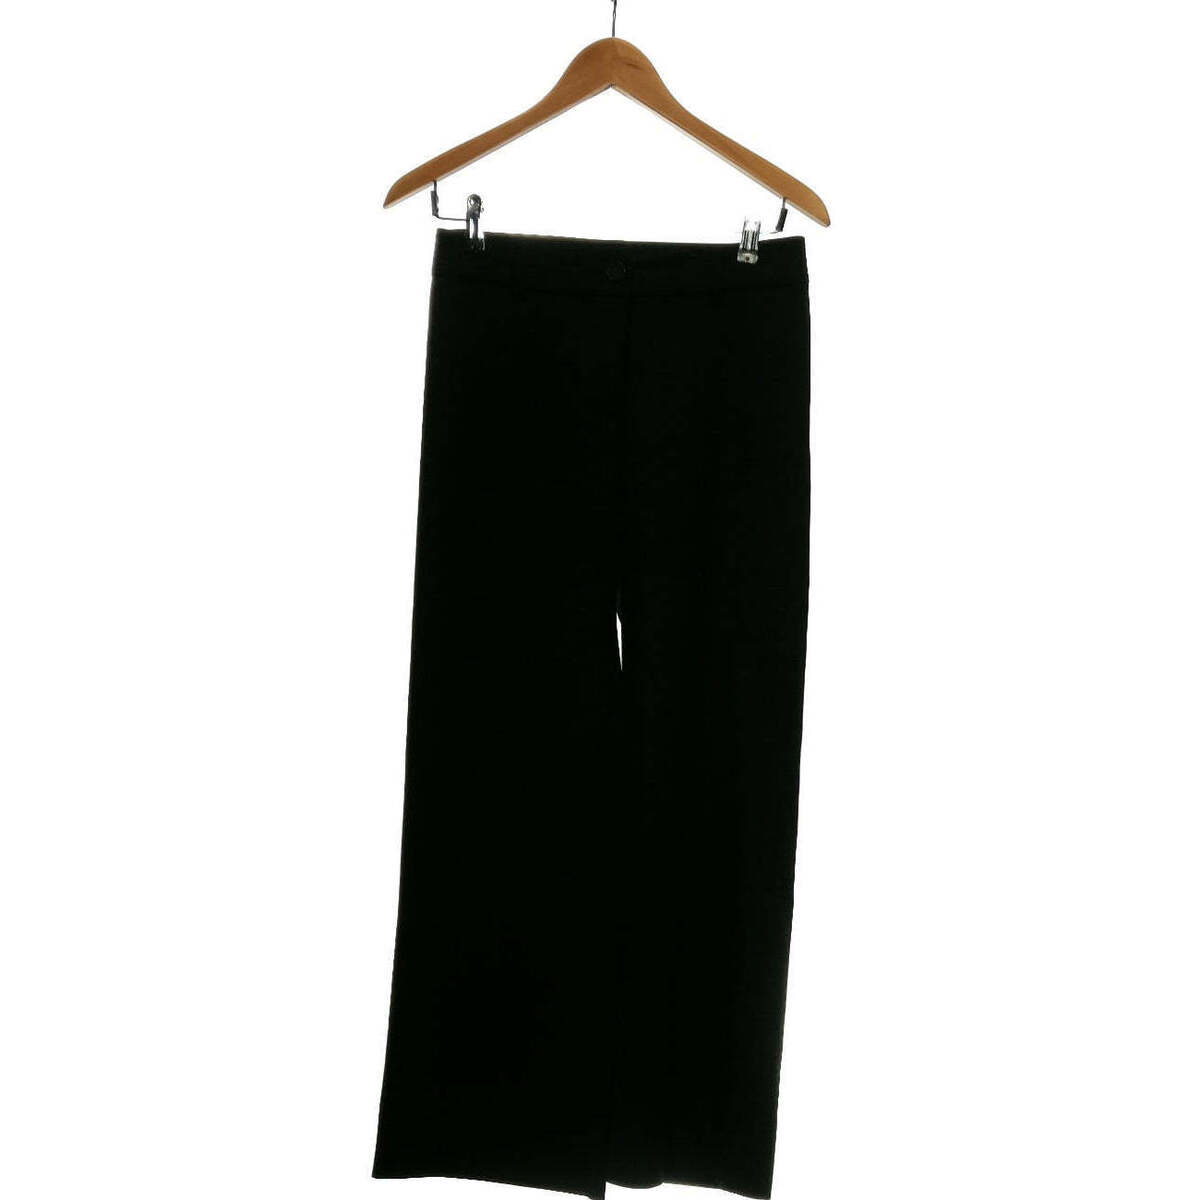 Vêtements Femme Pantalons Le Phare De La Baleine 36 - T1 - S Noir